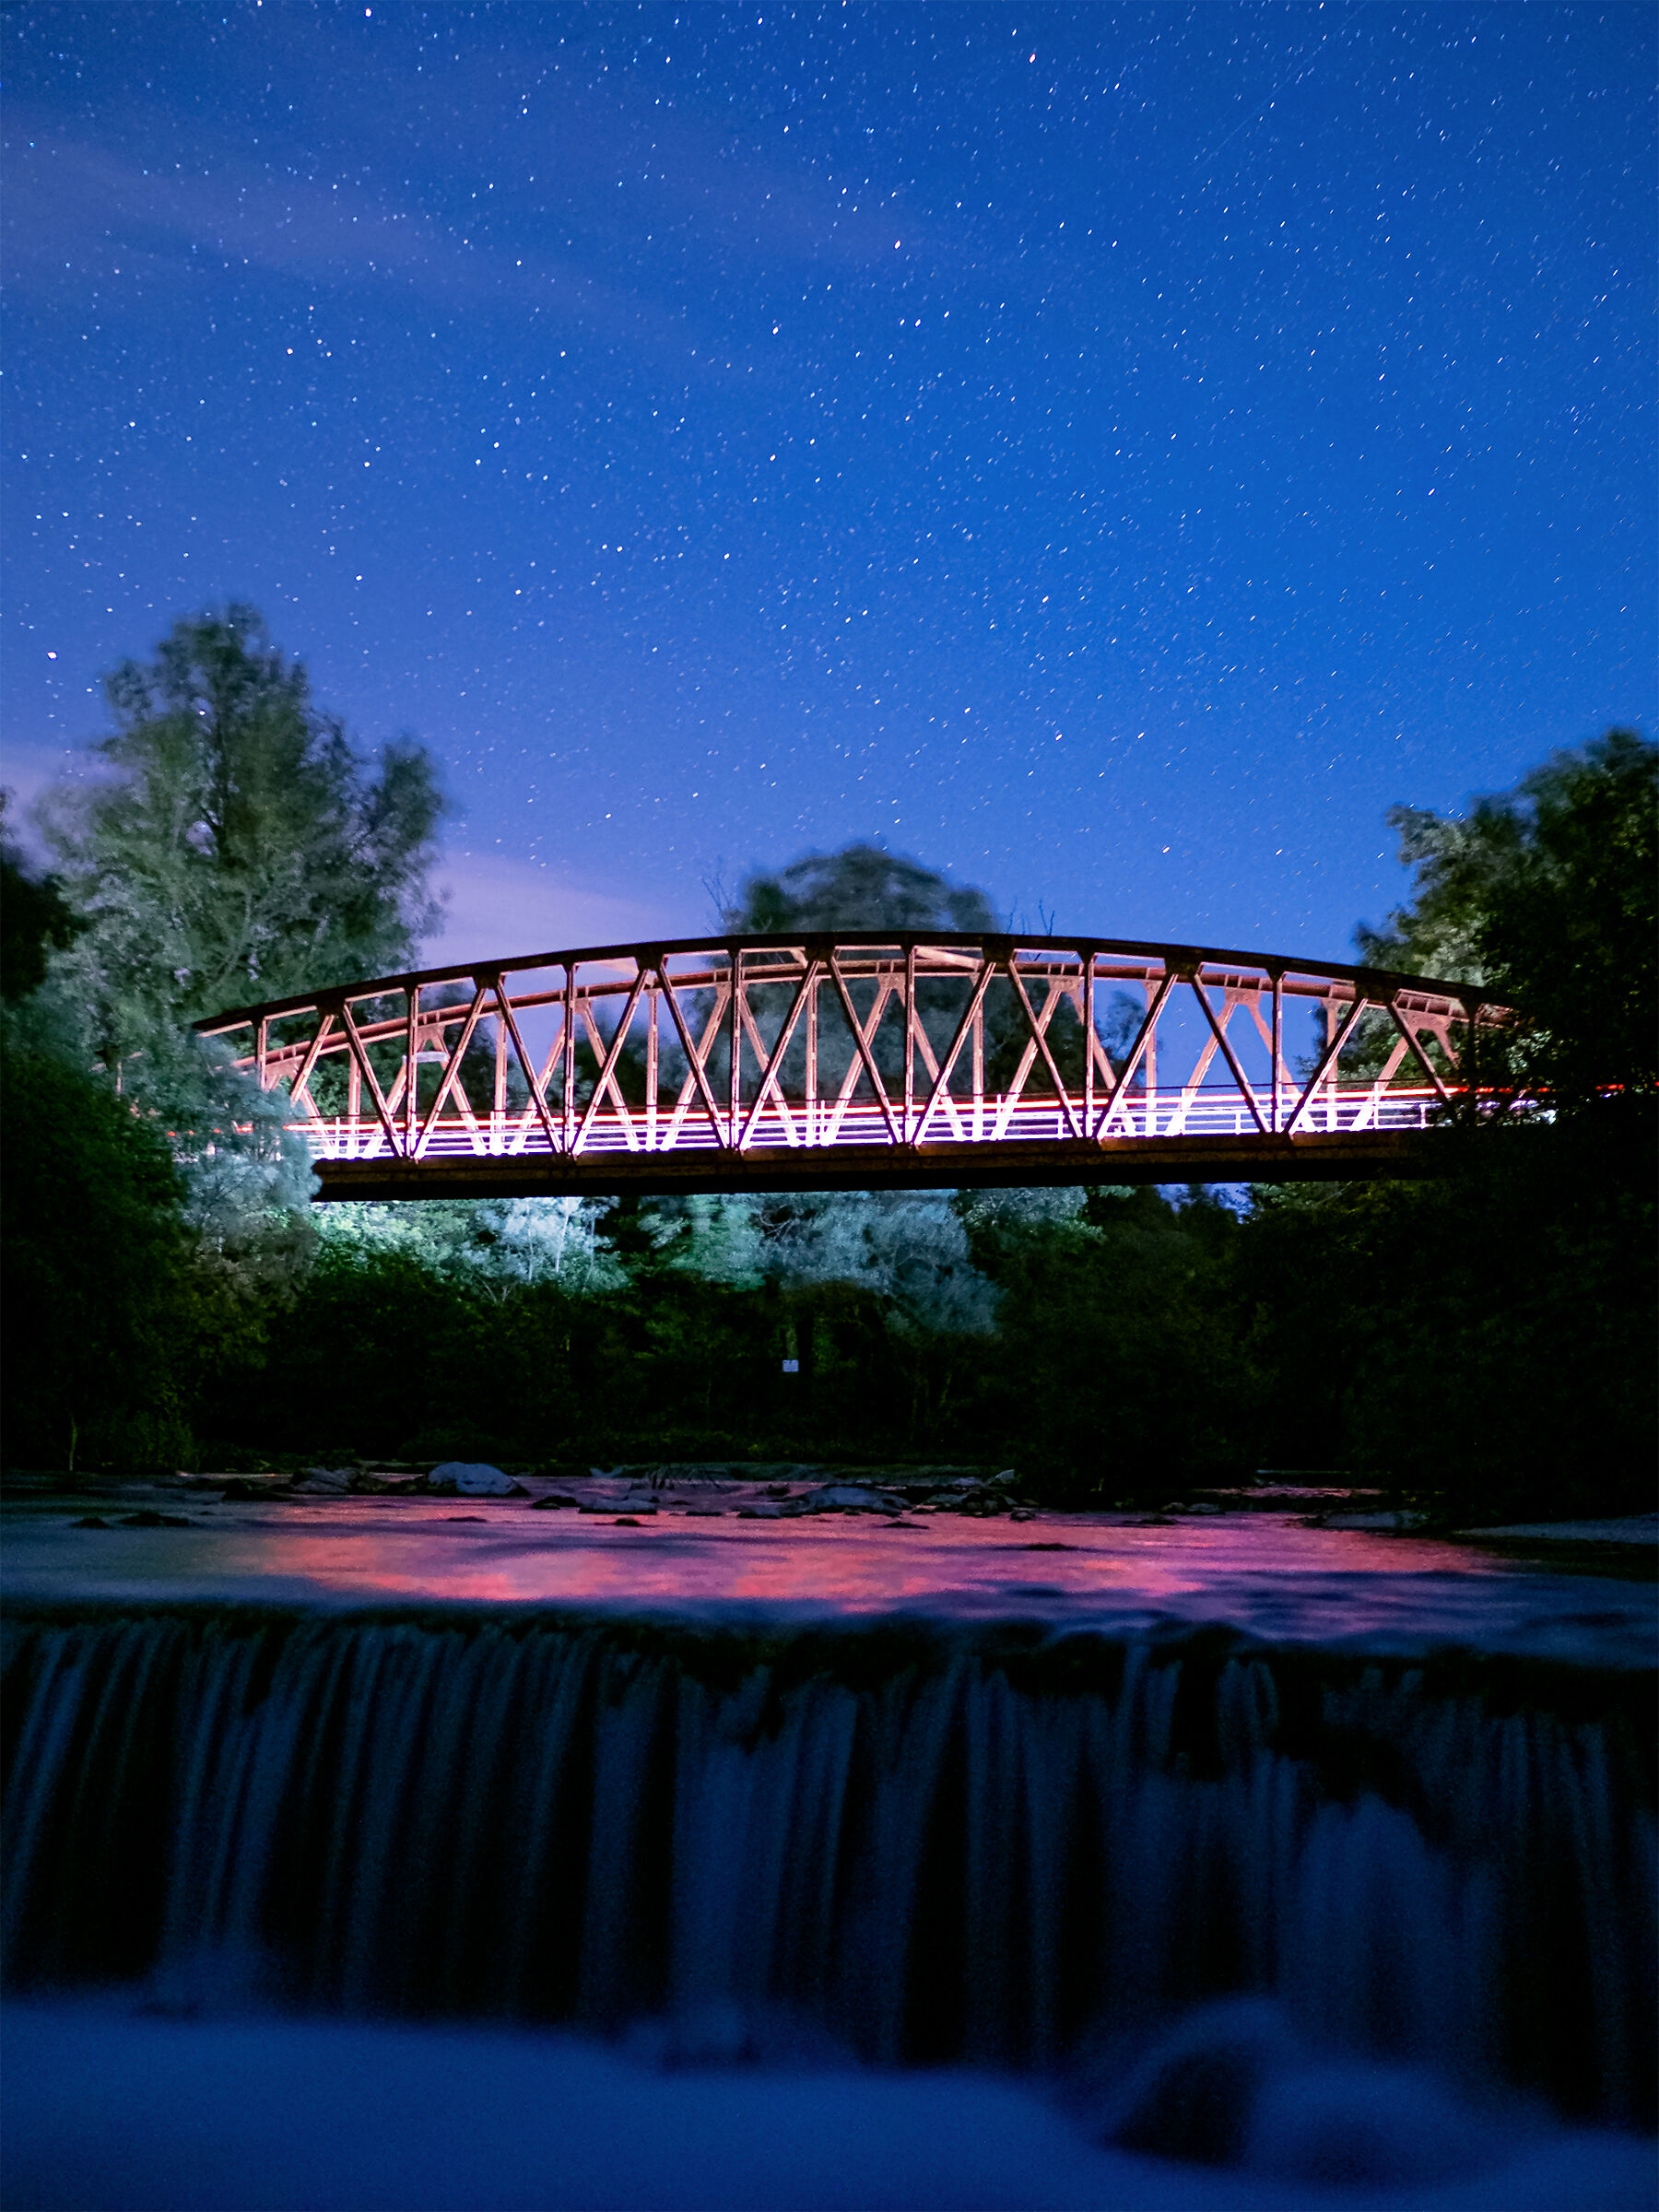 Notte stellata sul fiume Volturno...